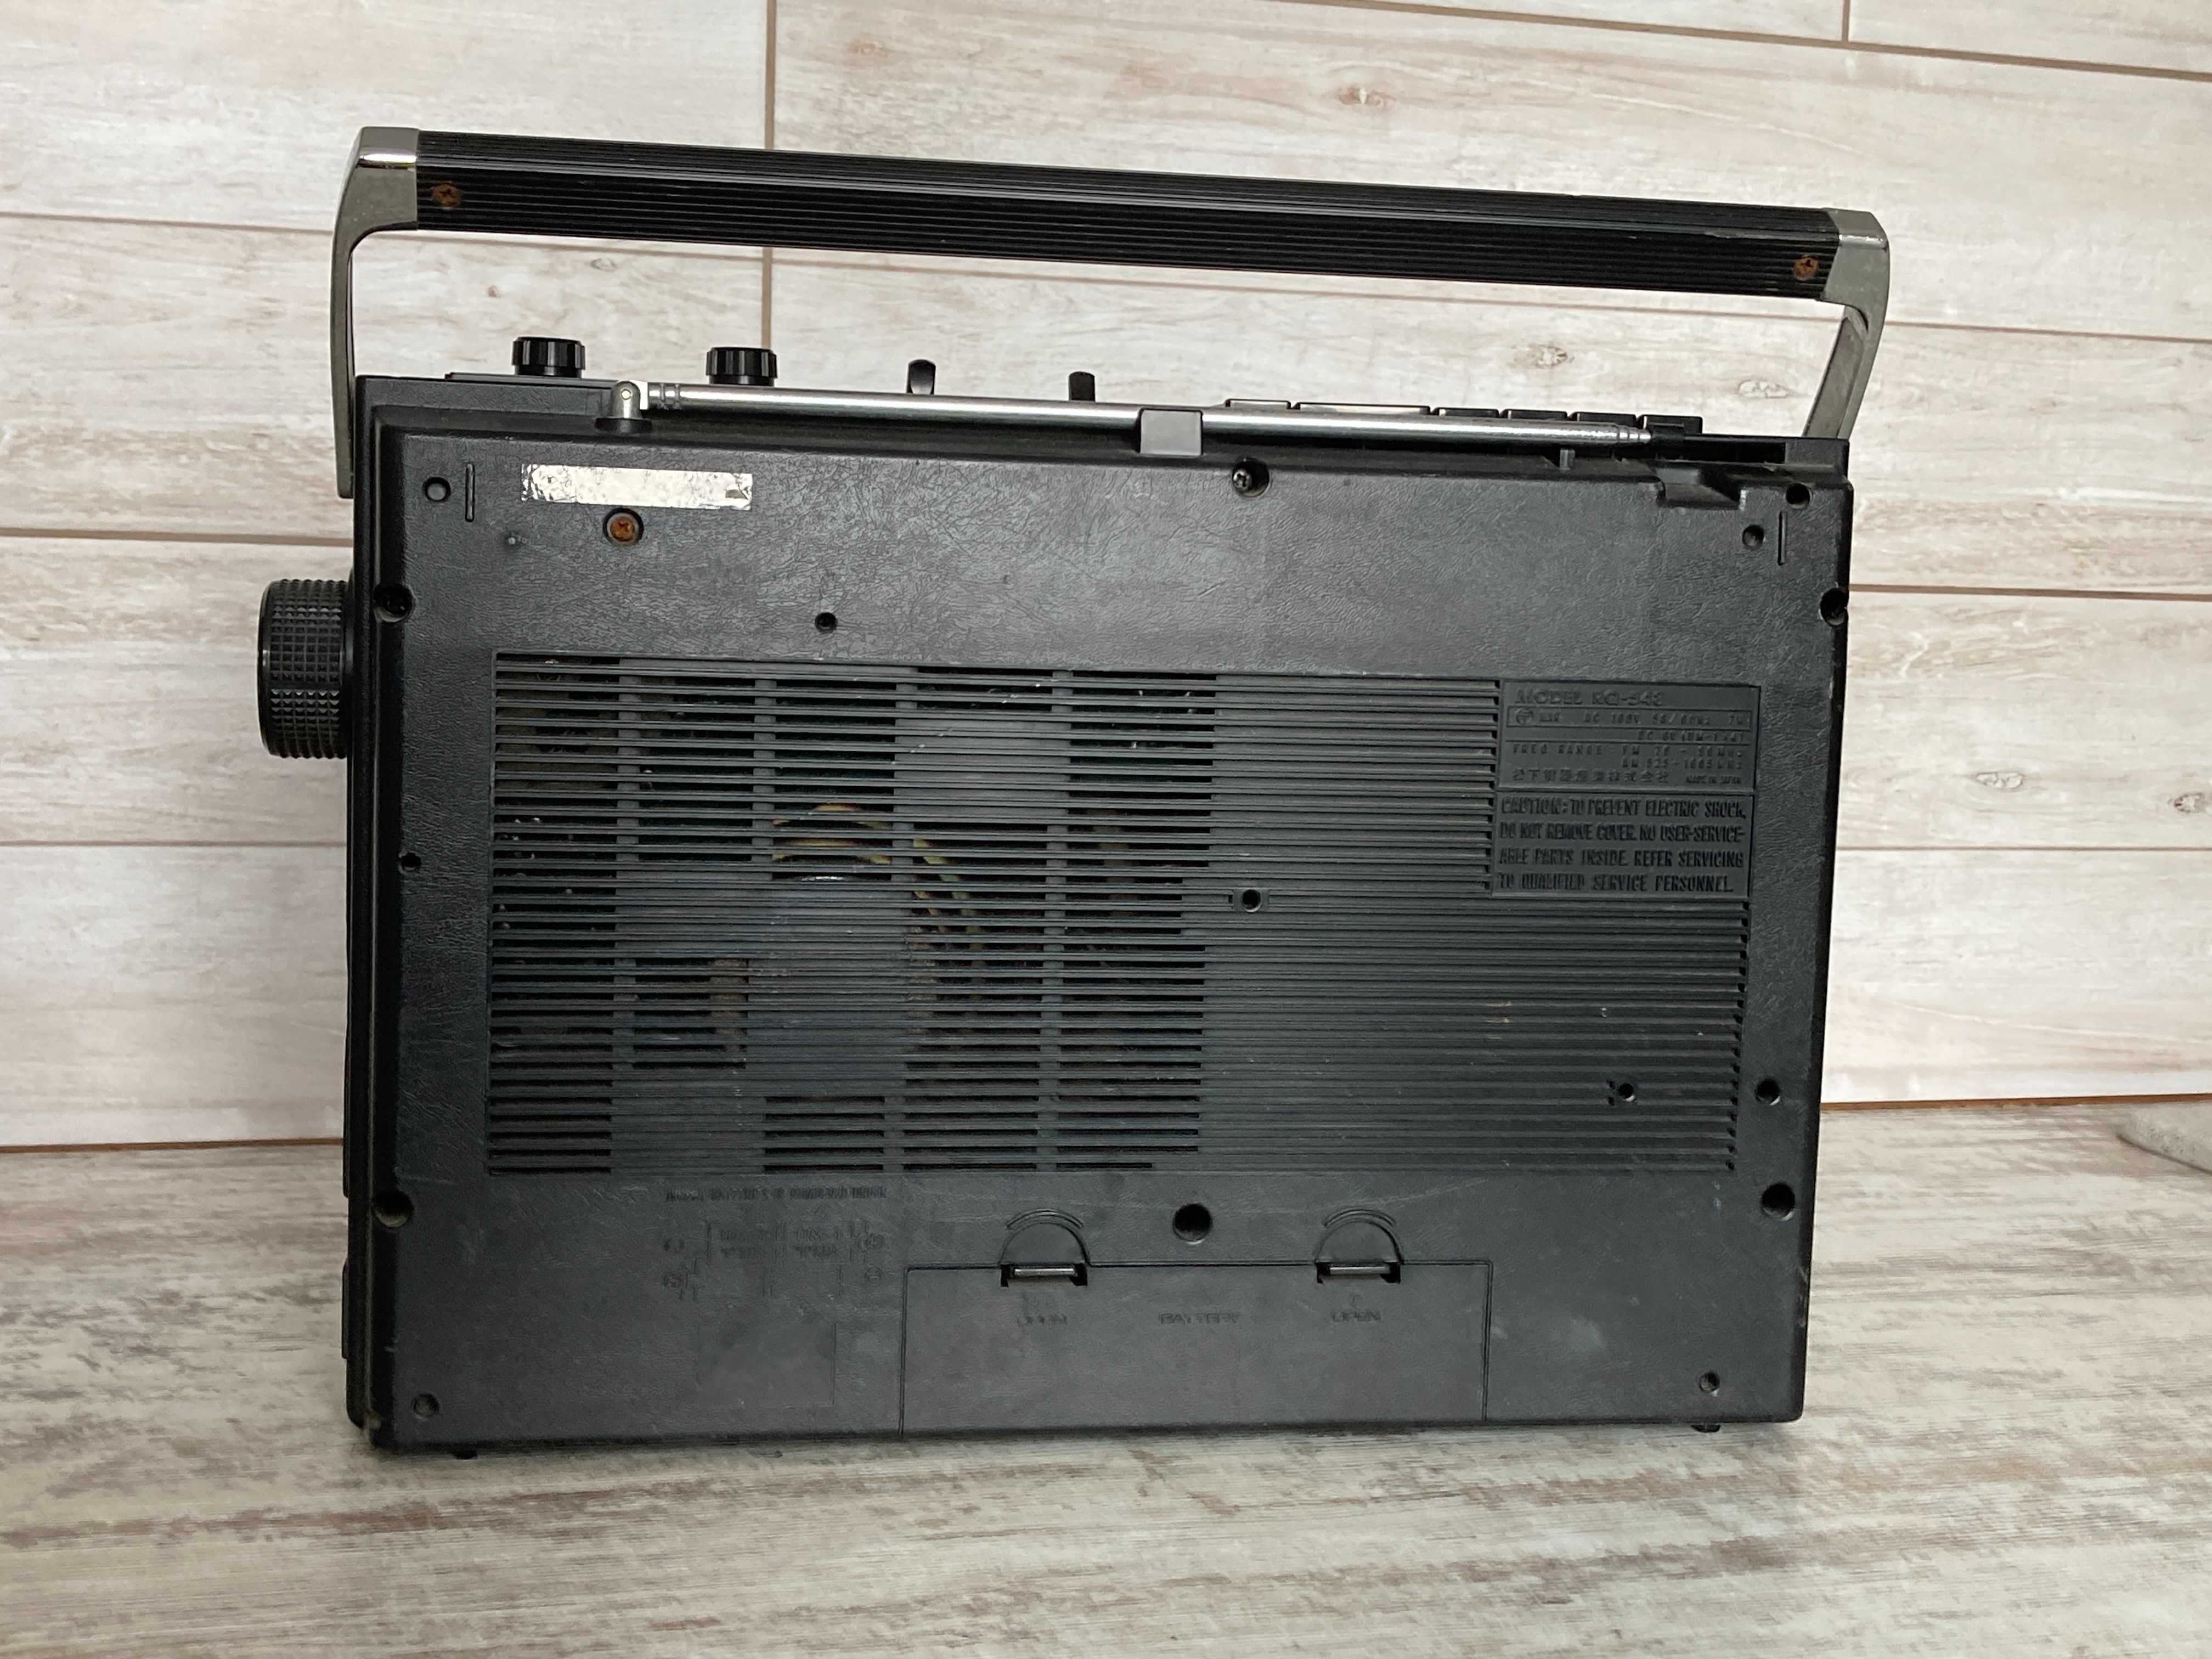 Японский кассетный магнитофон National RQ-548 Аудиокассета, Радио, AUX